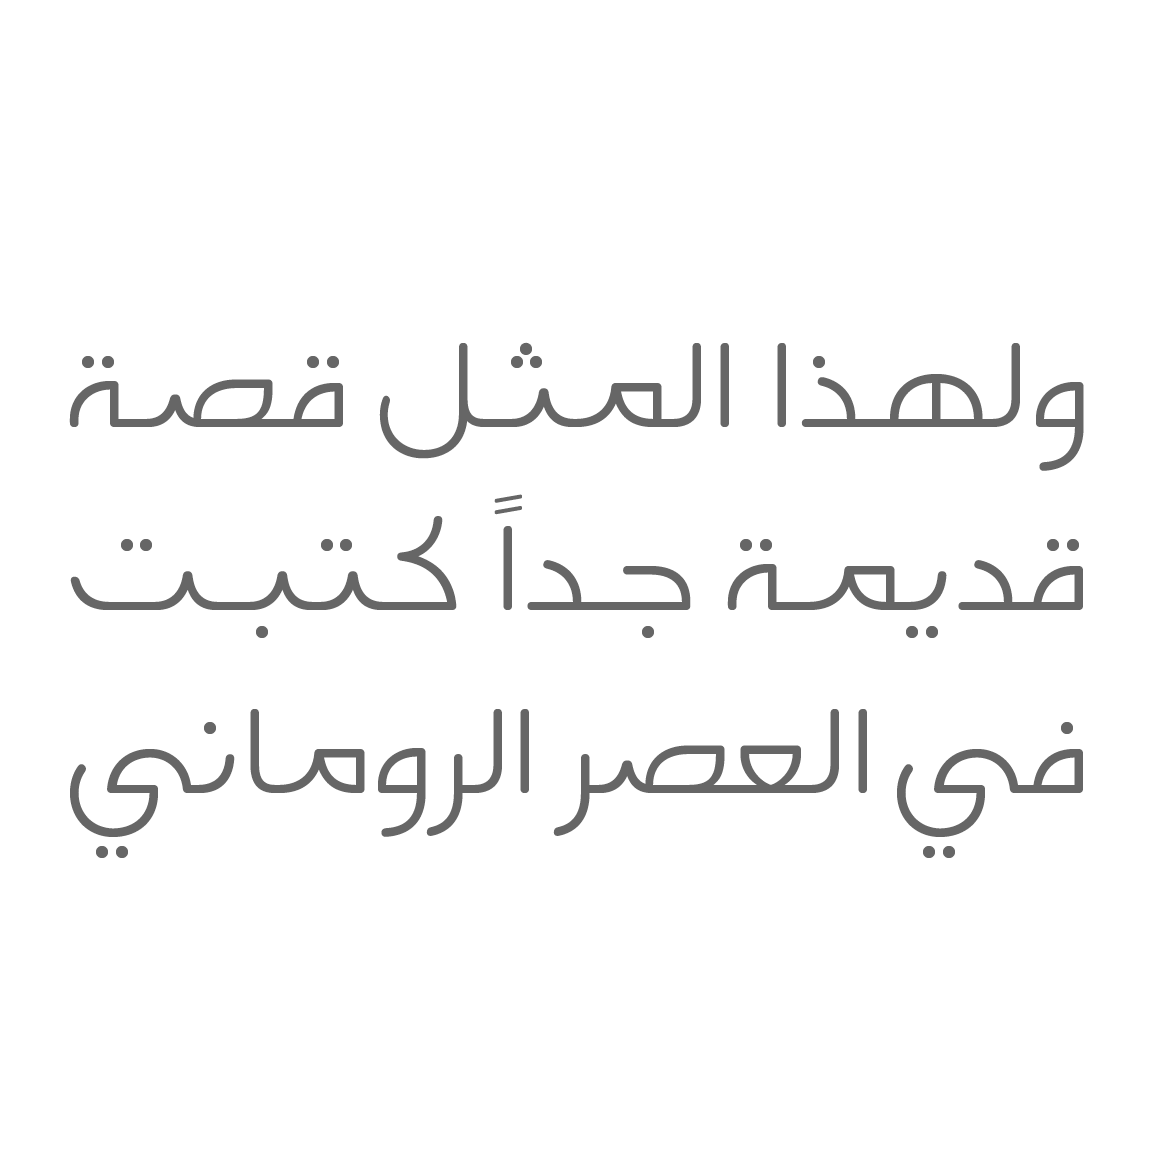 Falak - Arabic Font image.